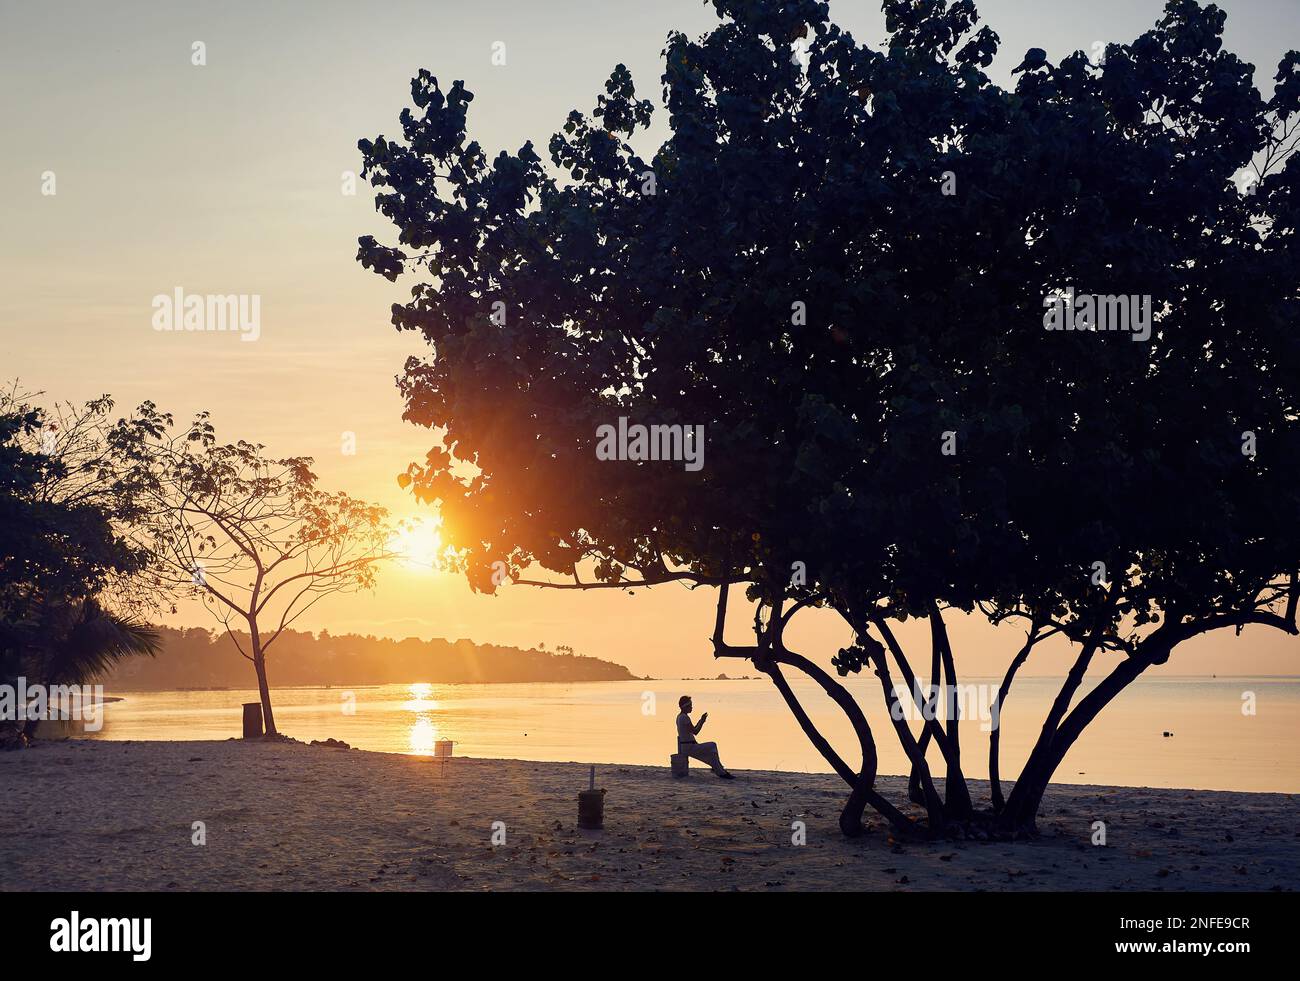 Glückliche Frau in Silhouette, die mit ihrem Handy am tropischen Strand in der Nähe von Palmen auf Phi Phi Island im Süden Thailands fotografiert. Travel Magazine V Stockfoto